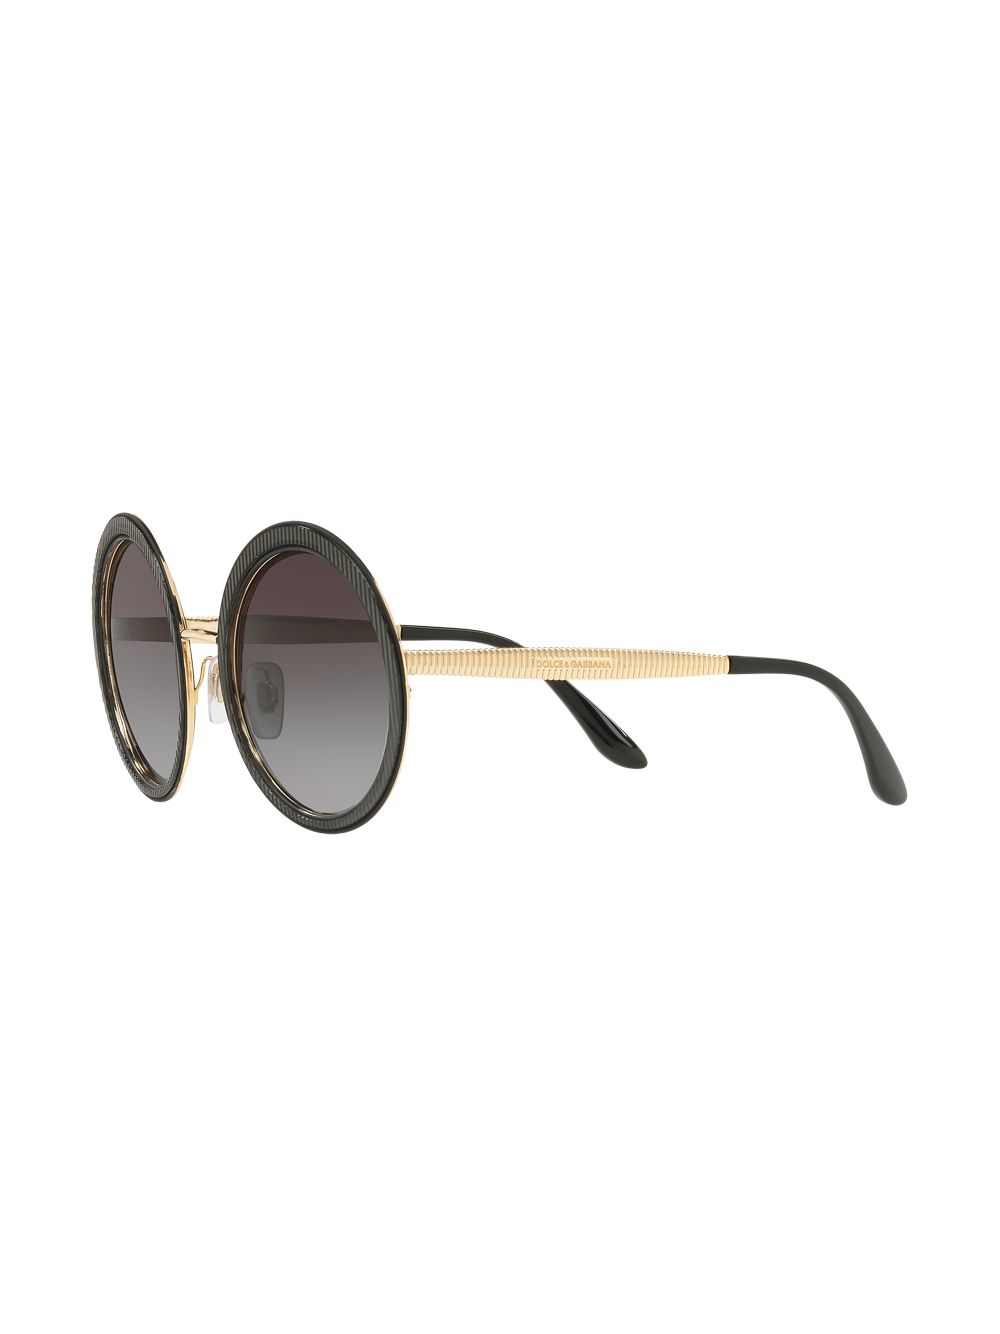 фото Dolce & Gabbana Eyewear солнцезащитные очки в круглой оправе